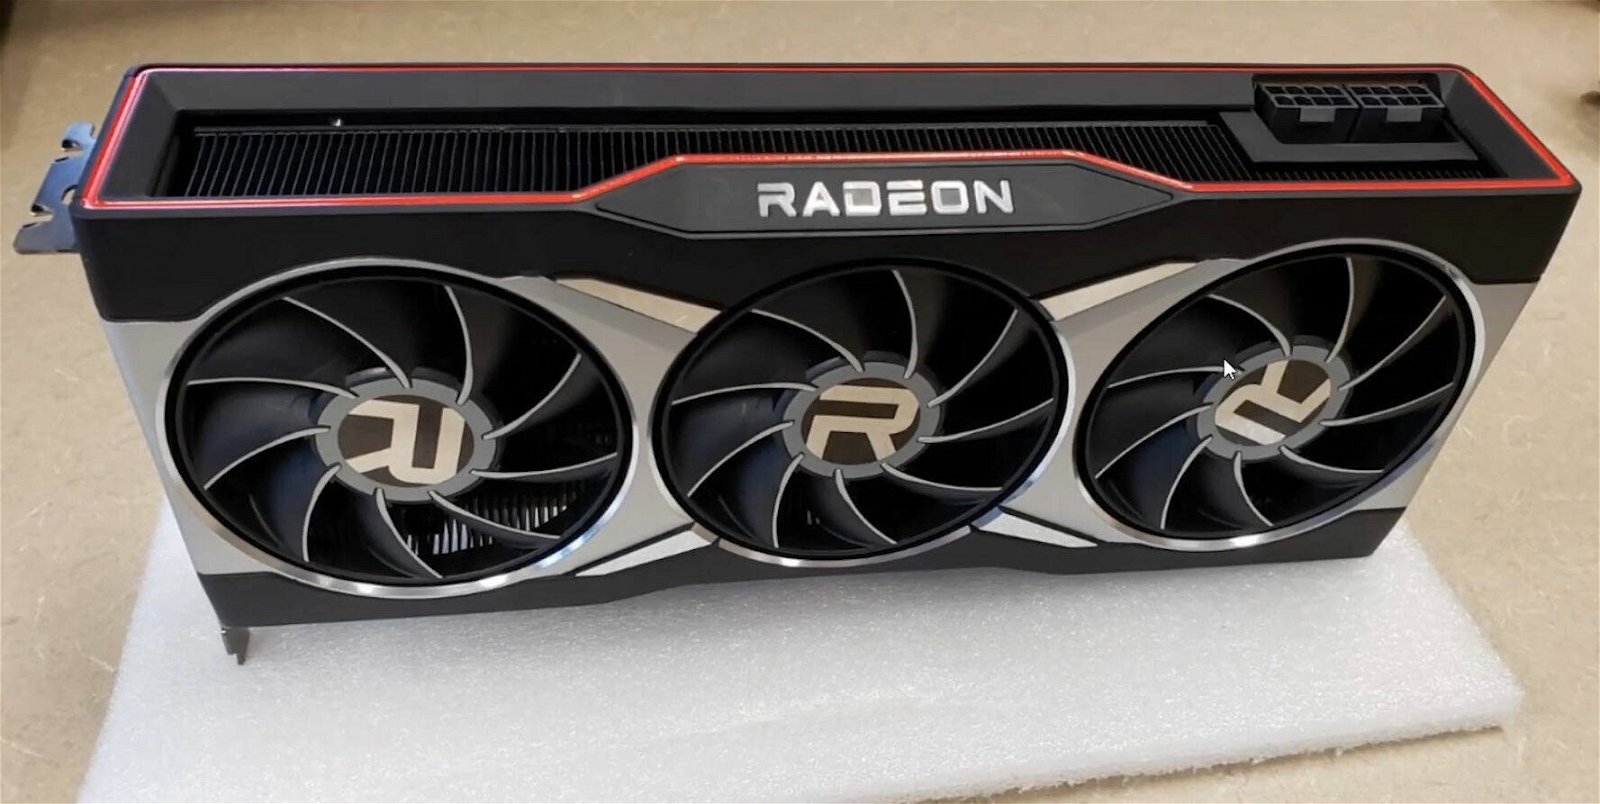 Immagine di AMD Radeon RX 6900 XT, 6800 XT e 6700 XT: tutte le specifiche svelate da Newegg